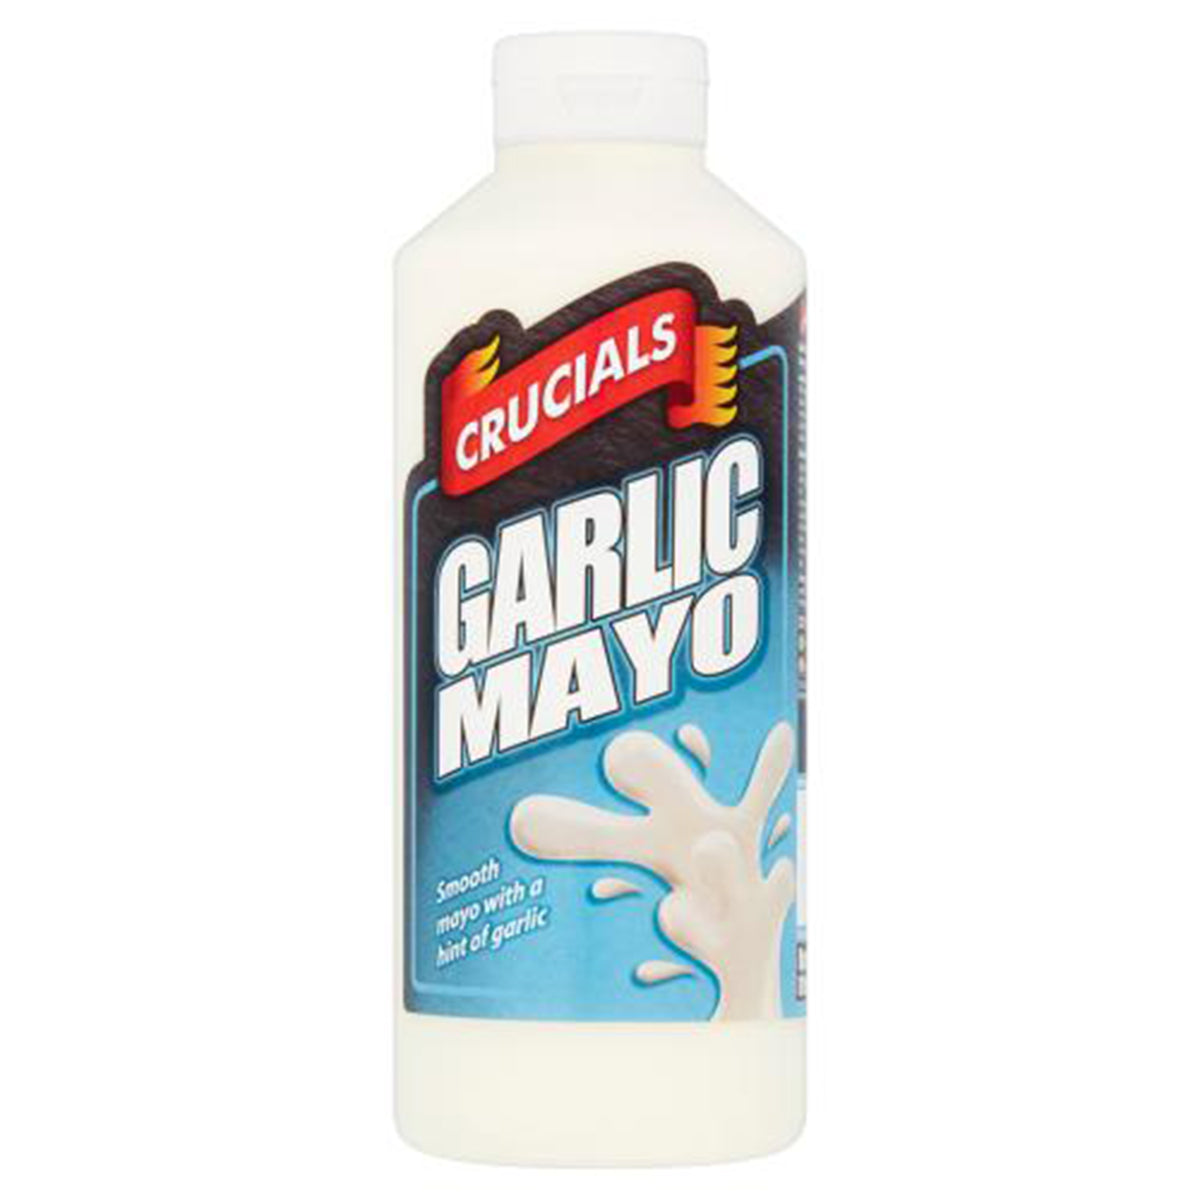 Crucials - Garlic Mayo - 500ml - Continental Food Store